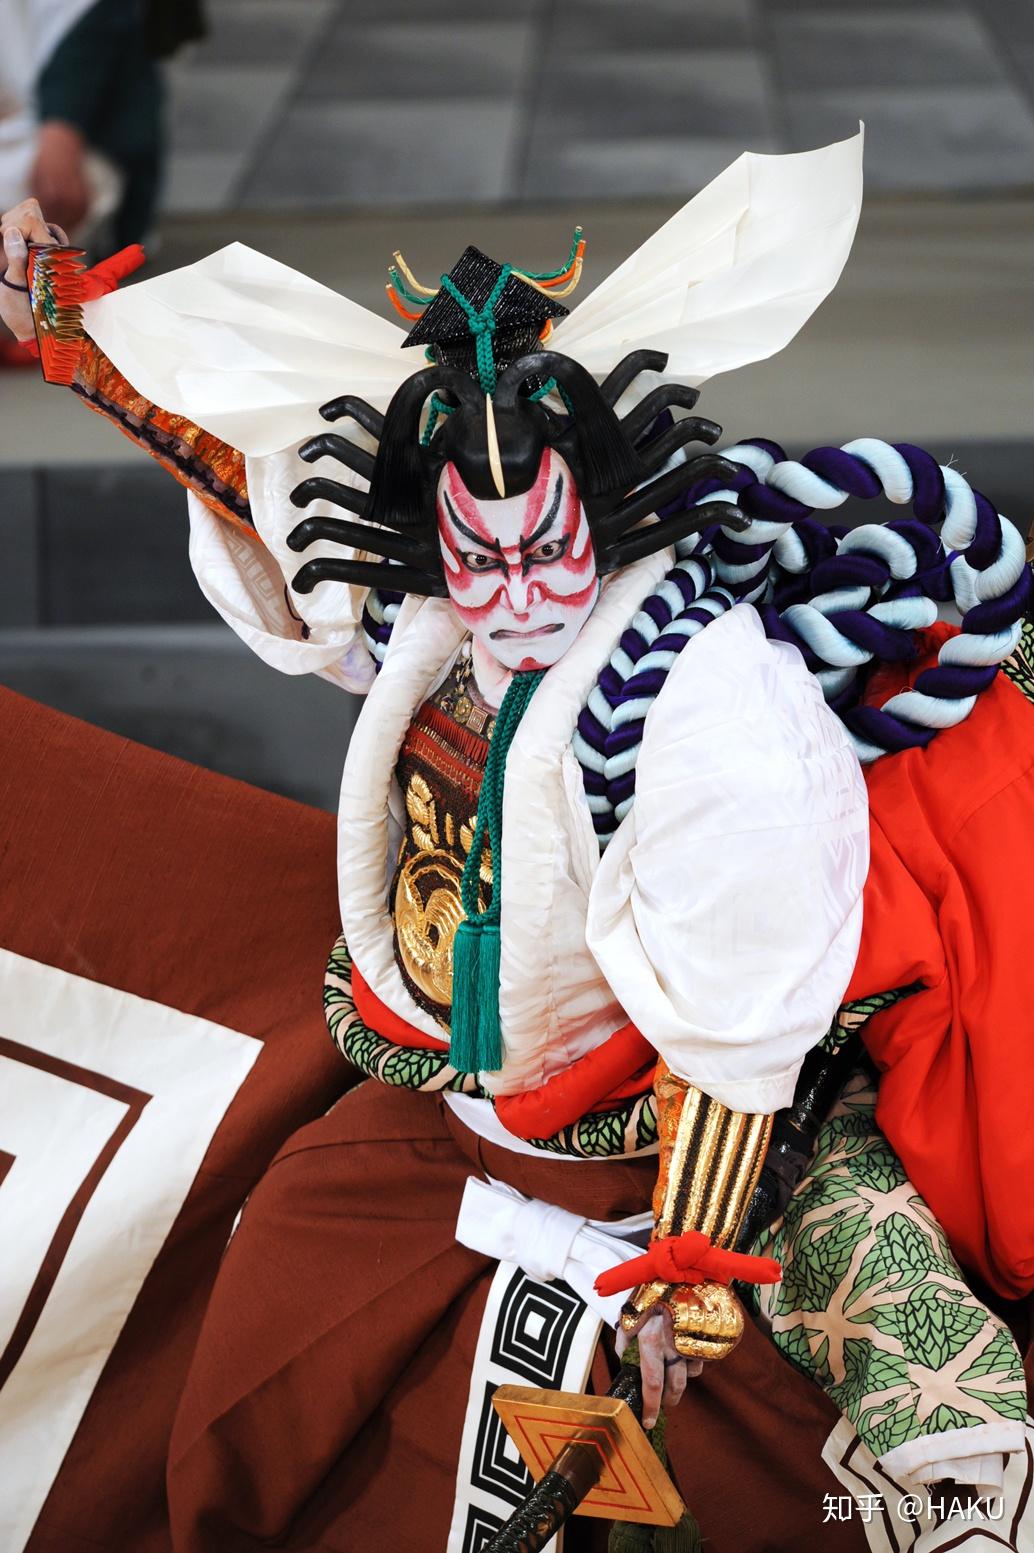 日本文化 带你走进歌舞伎的世界 ②歌舞伎看点及观赏攻略篇